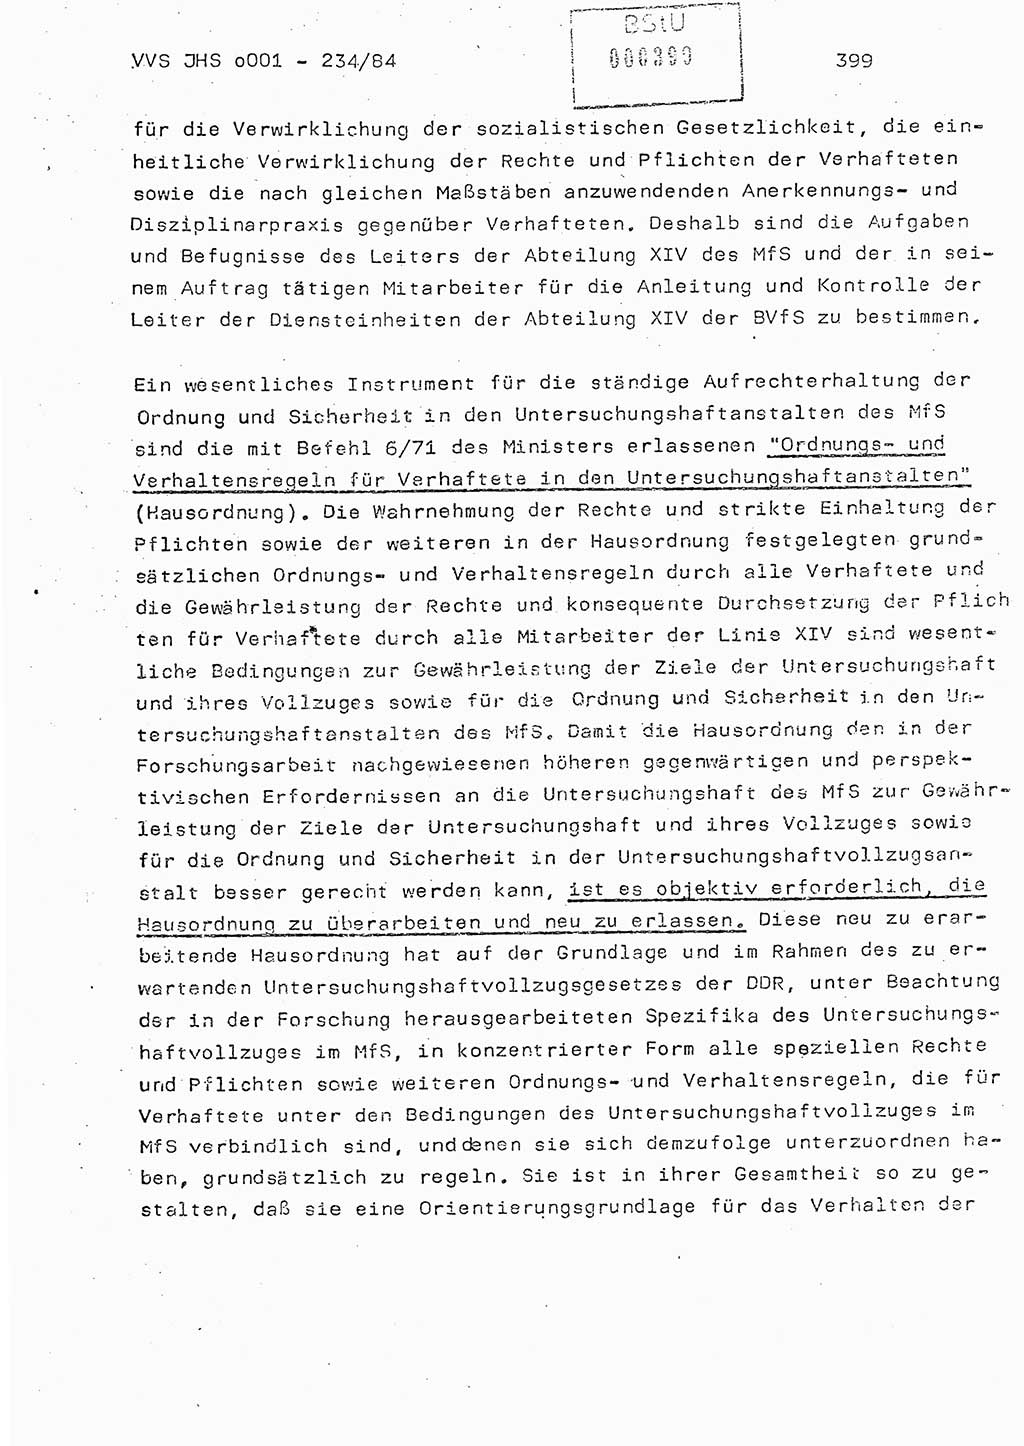 Dissertation Oberst Siegfried Rataizick (Abt. ⅩⅣ), Oberstleutnant Volkmar Heinz (Abt. ⅩⅣ), Oberstleutnant Werner Stein (HA Ⅸ), Hauptmann Heinz Conrad (JHS), Ministerium für Staatssicherheit (MfS) [Deutsche Demokratische Republik (DDR)], Juristische Hochschule (JHS), Vertrauliche Verschlußsache (VVS) o001-234/84, Potsdam 1984, Seite 399 (Diss. MfS DDR JHS VVS o001-234/84 1984, S. 399)